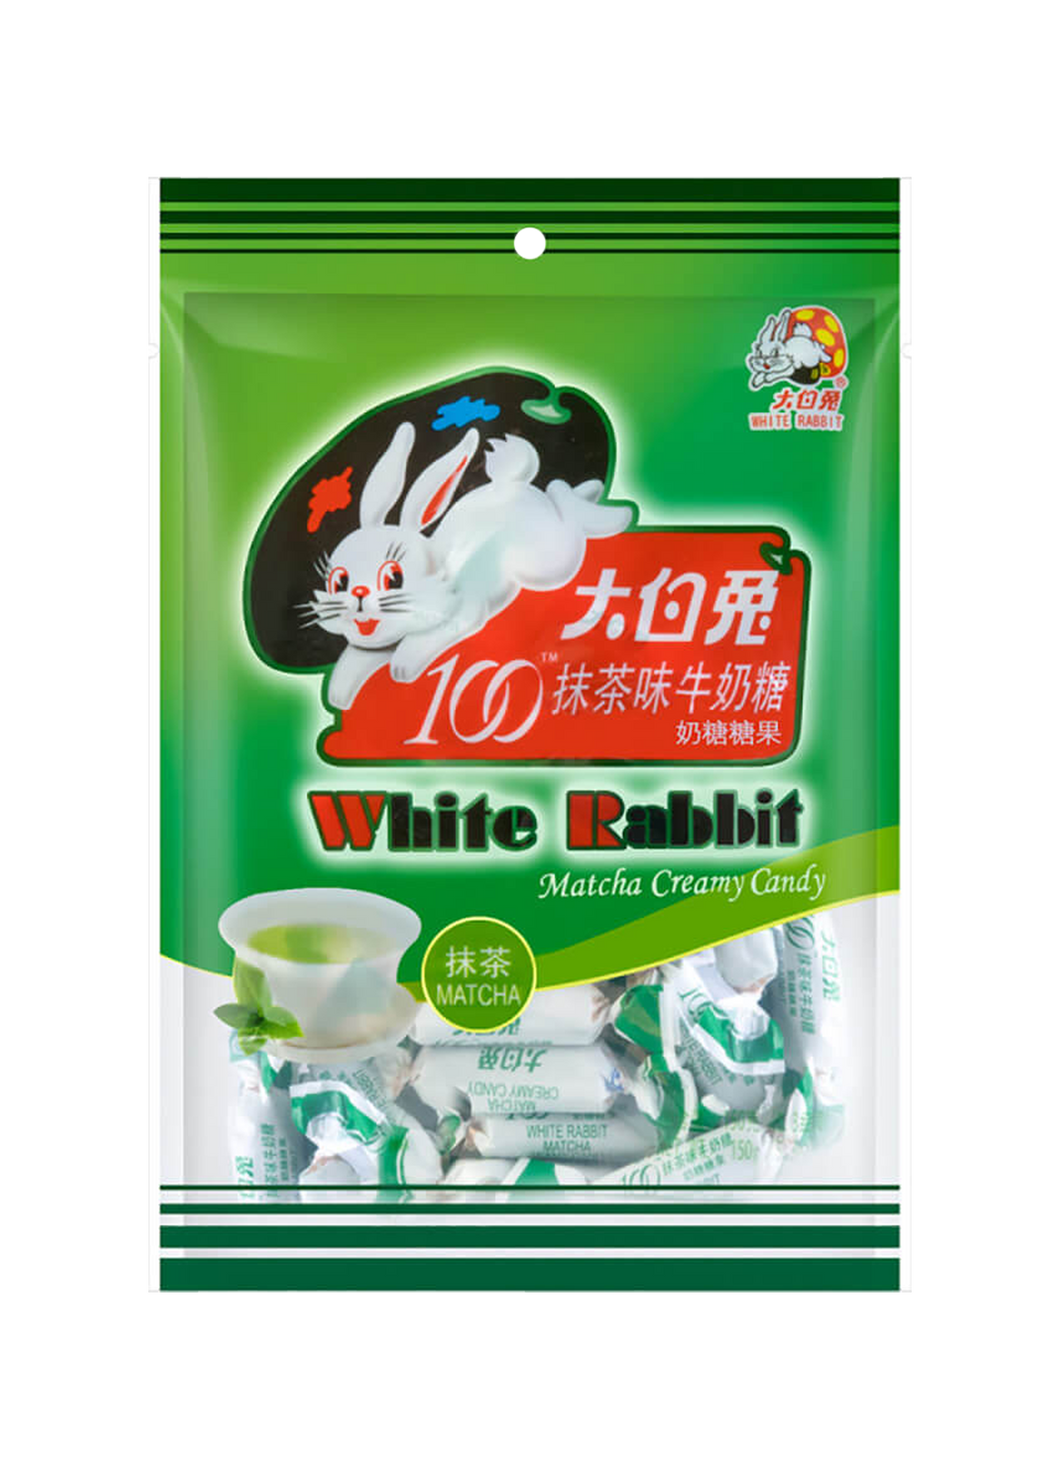 White Rabbit Matcha Creamy Candy